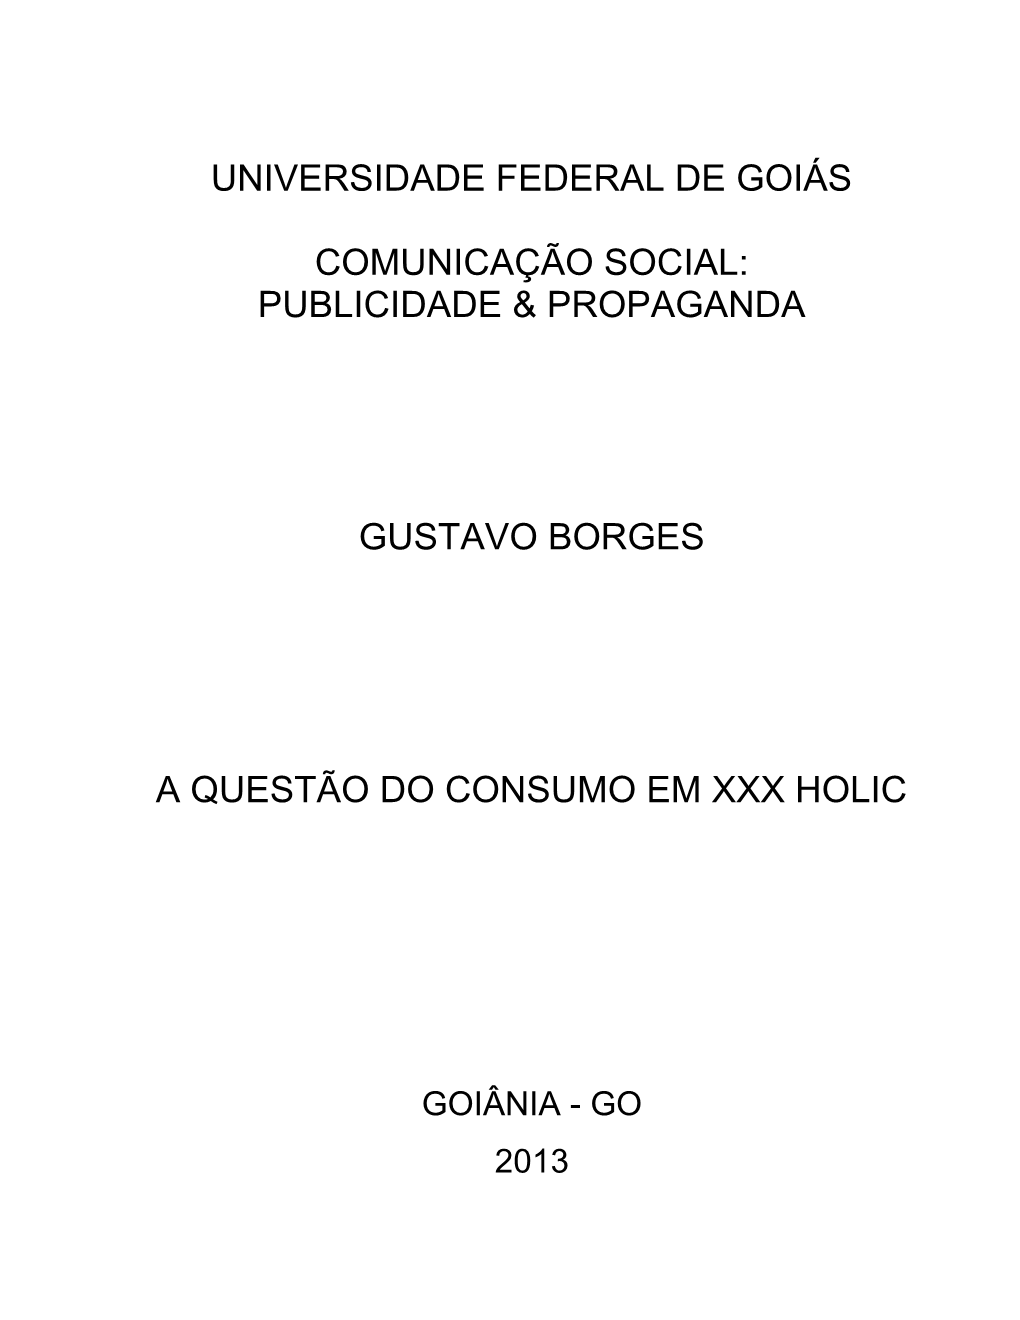 Publicidade & Propaganda Gustavo Borges a Questão Do Consumo Em Xxx Holic